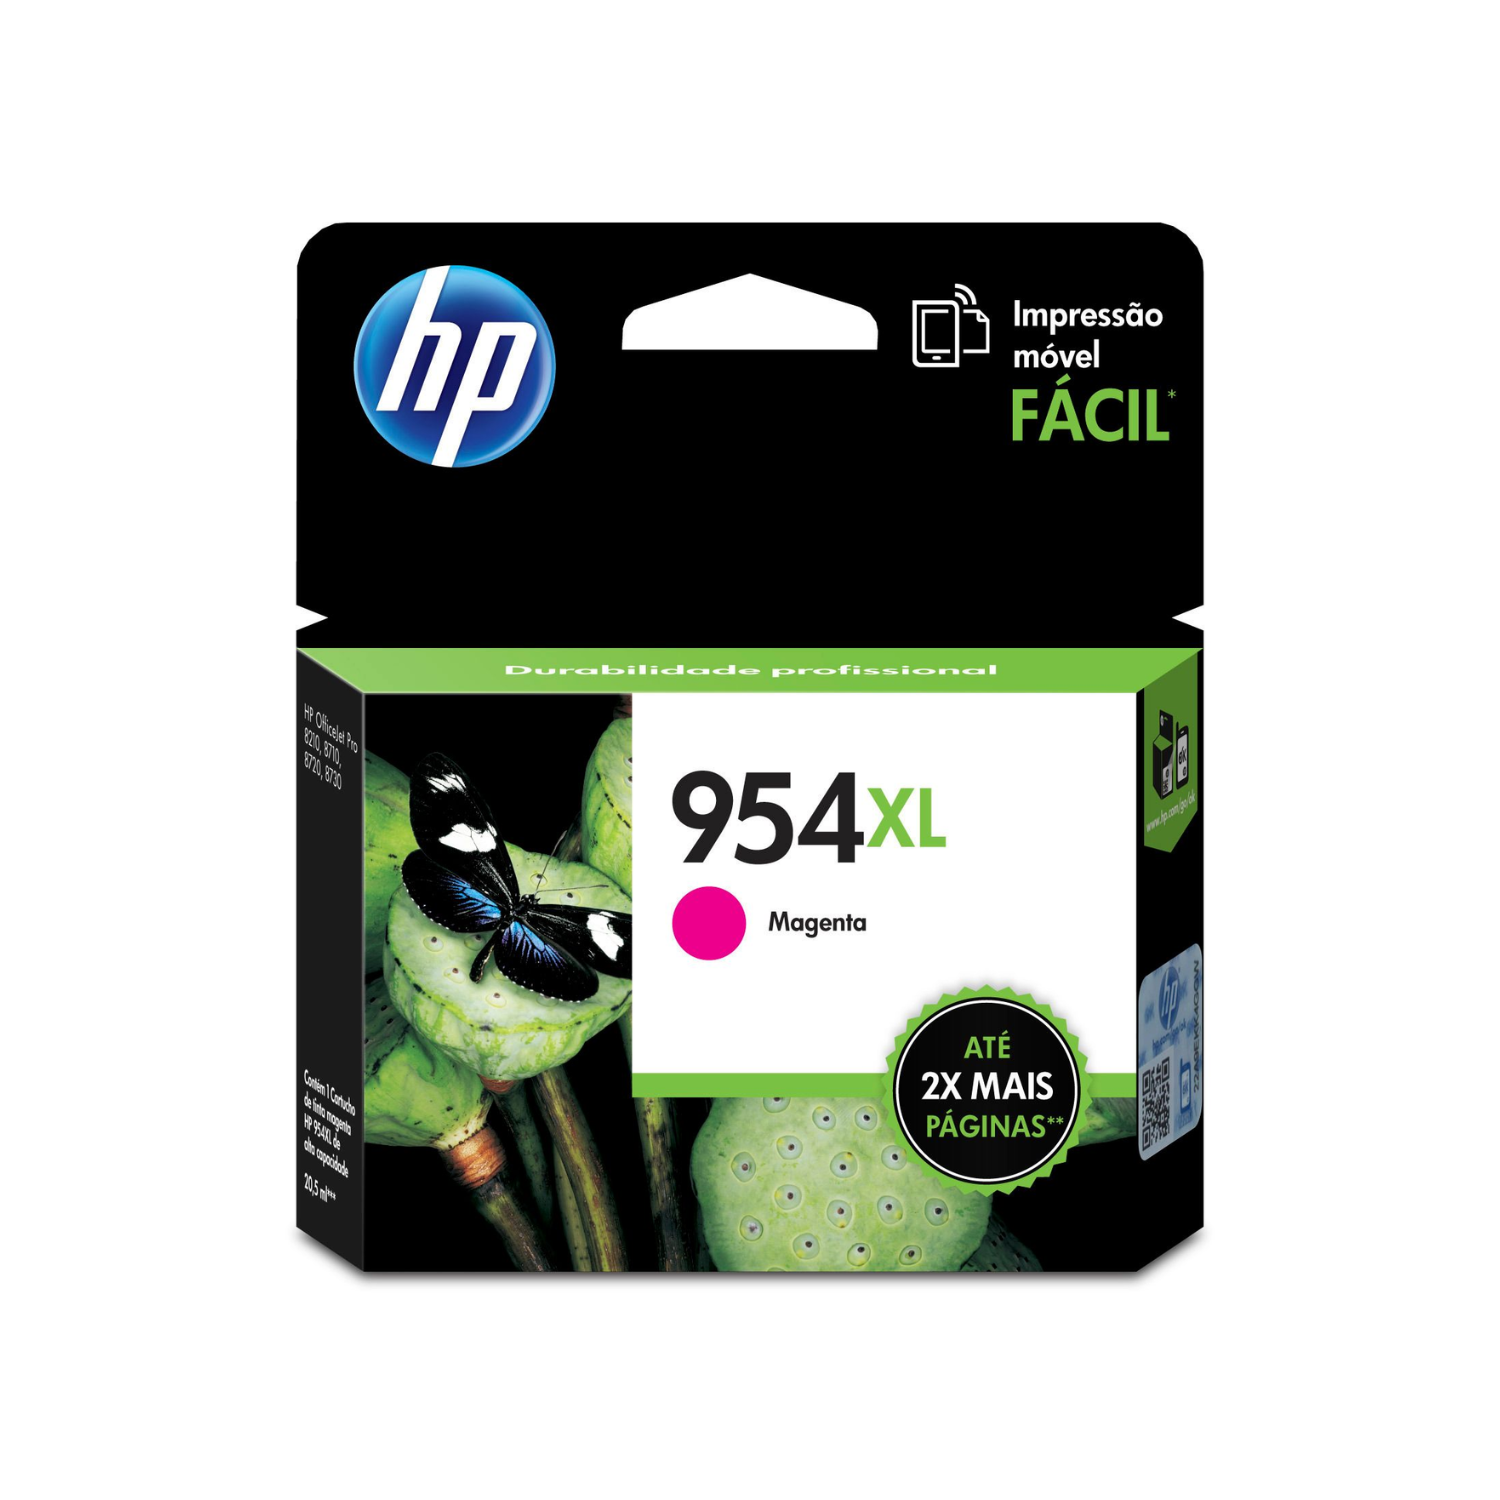 Cartucho de tinta HP 954XL Magenta (L0S65AL) OfficeJet 8710 1600 Pag.